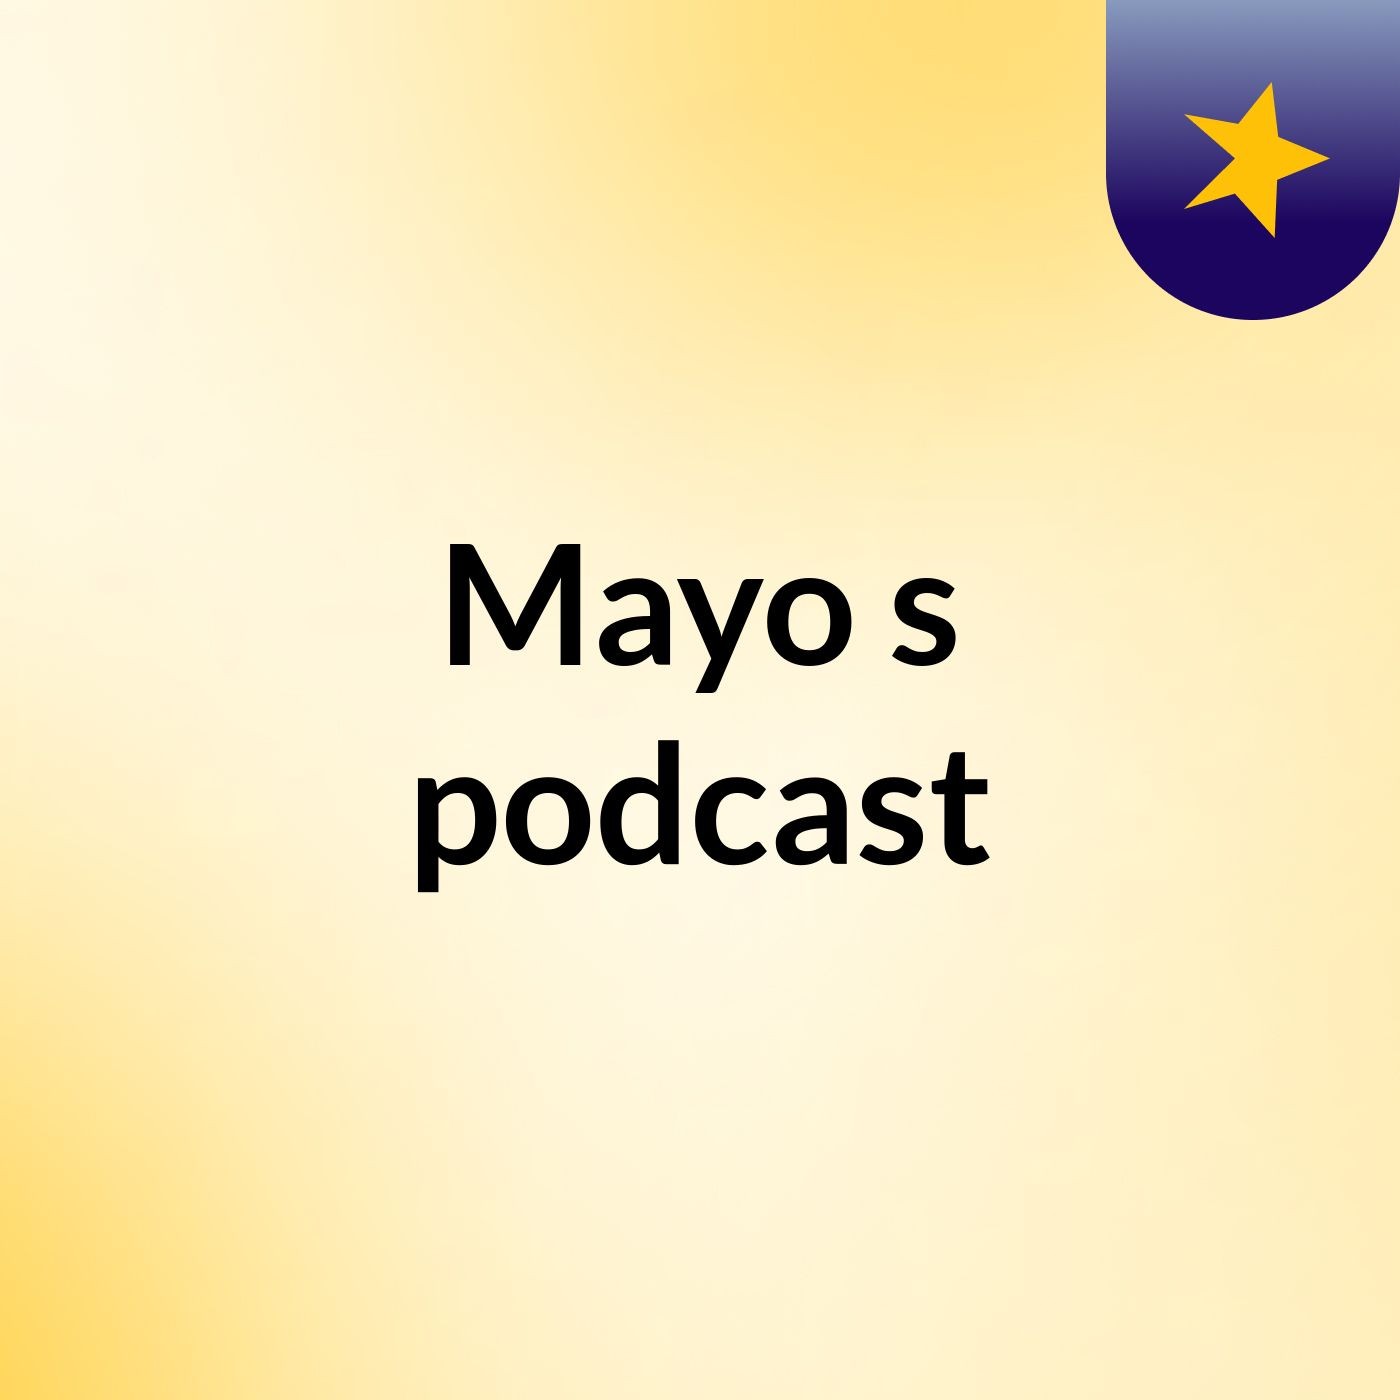 Mayo's podcast